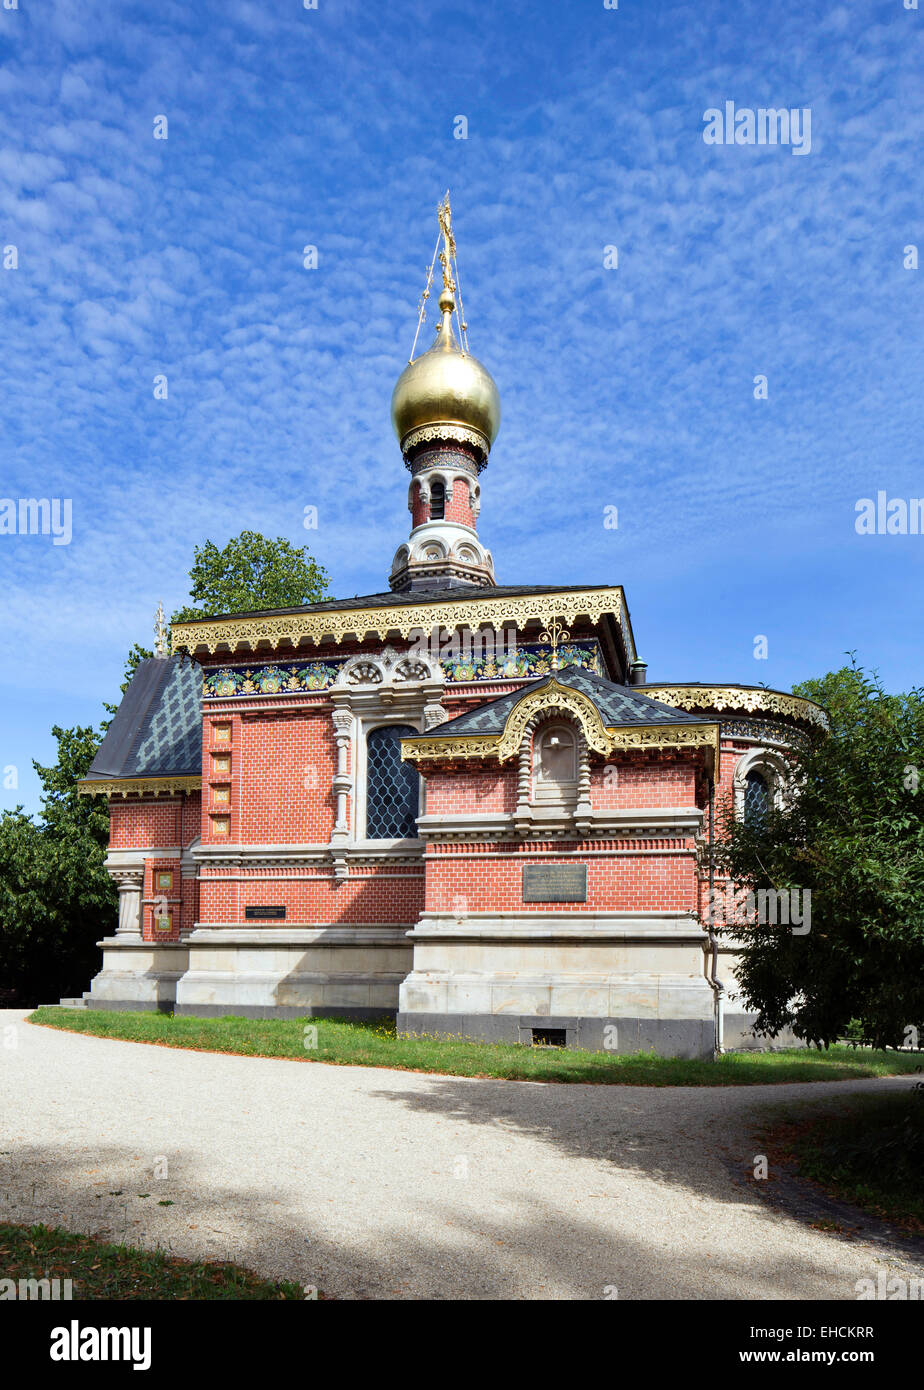 Russisch-orthodoxe Kirche Allerheiligen, russische Kapelle, Kurpark, Bad Homburg, Hessen, Deutschland Stockfoto